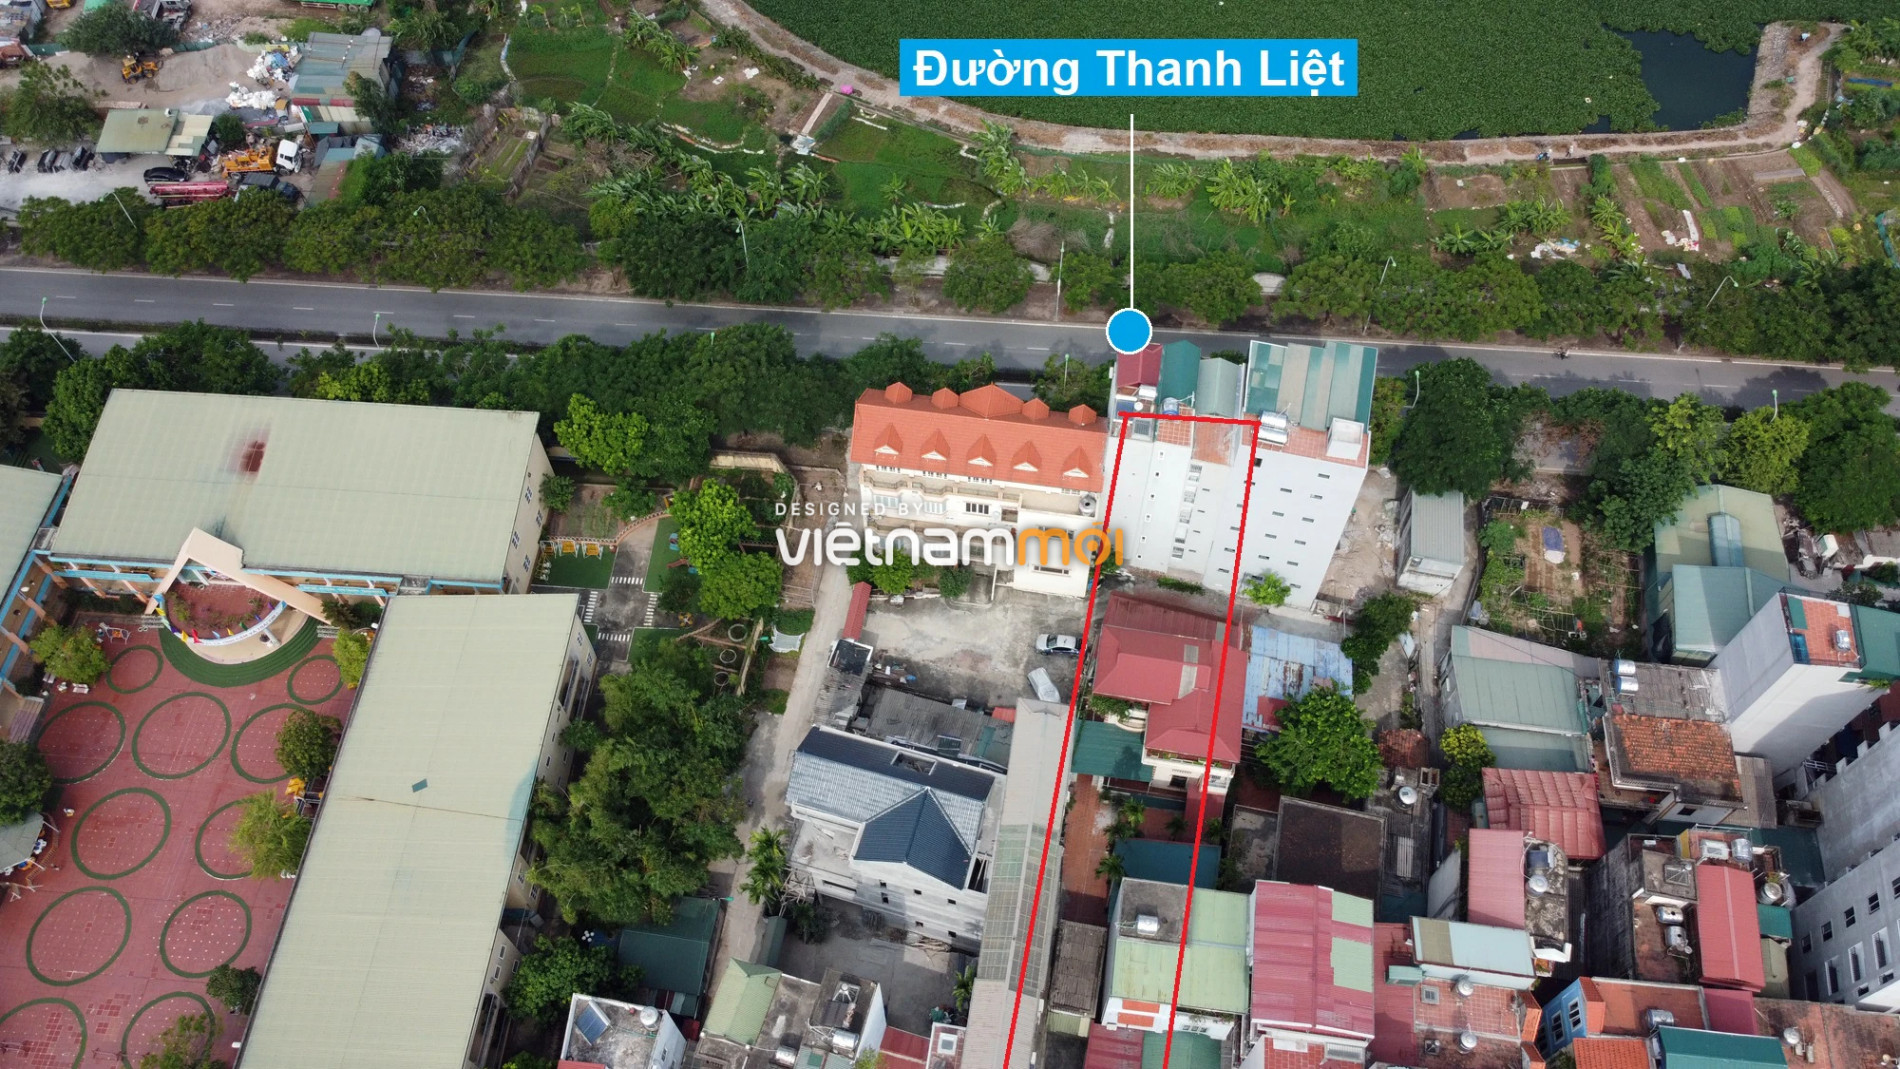 Những khu đất sắp thu hồi để mở đường ở xã Thanh Liệt, Thanh Trì, Hà Nội (phần 7) - Ảnh 17.